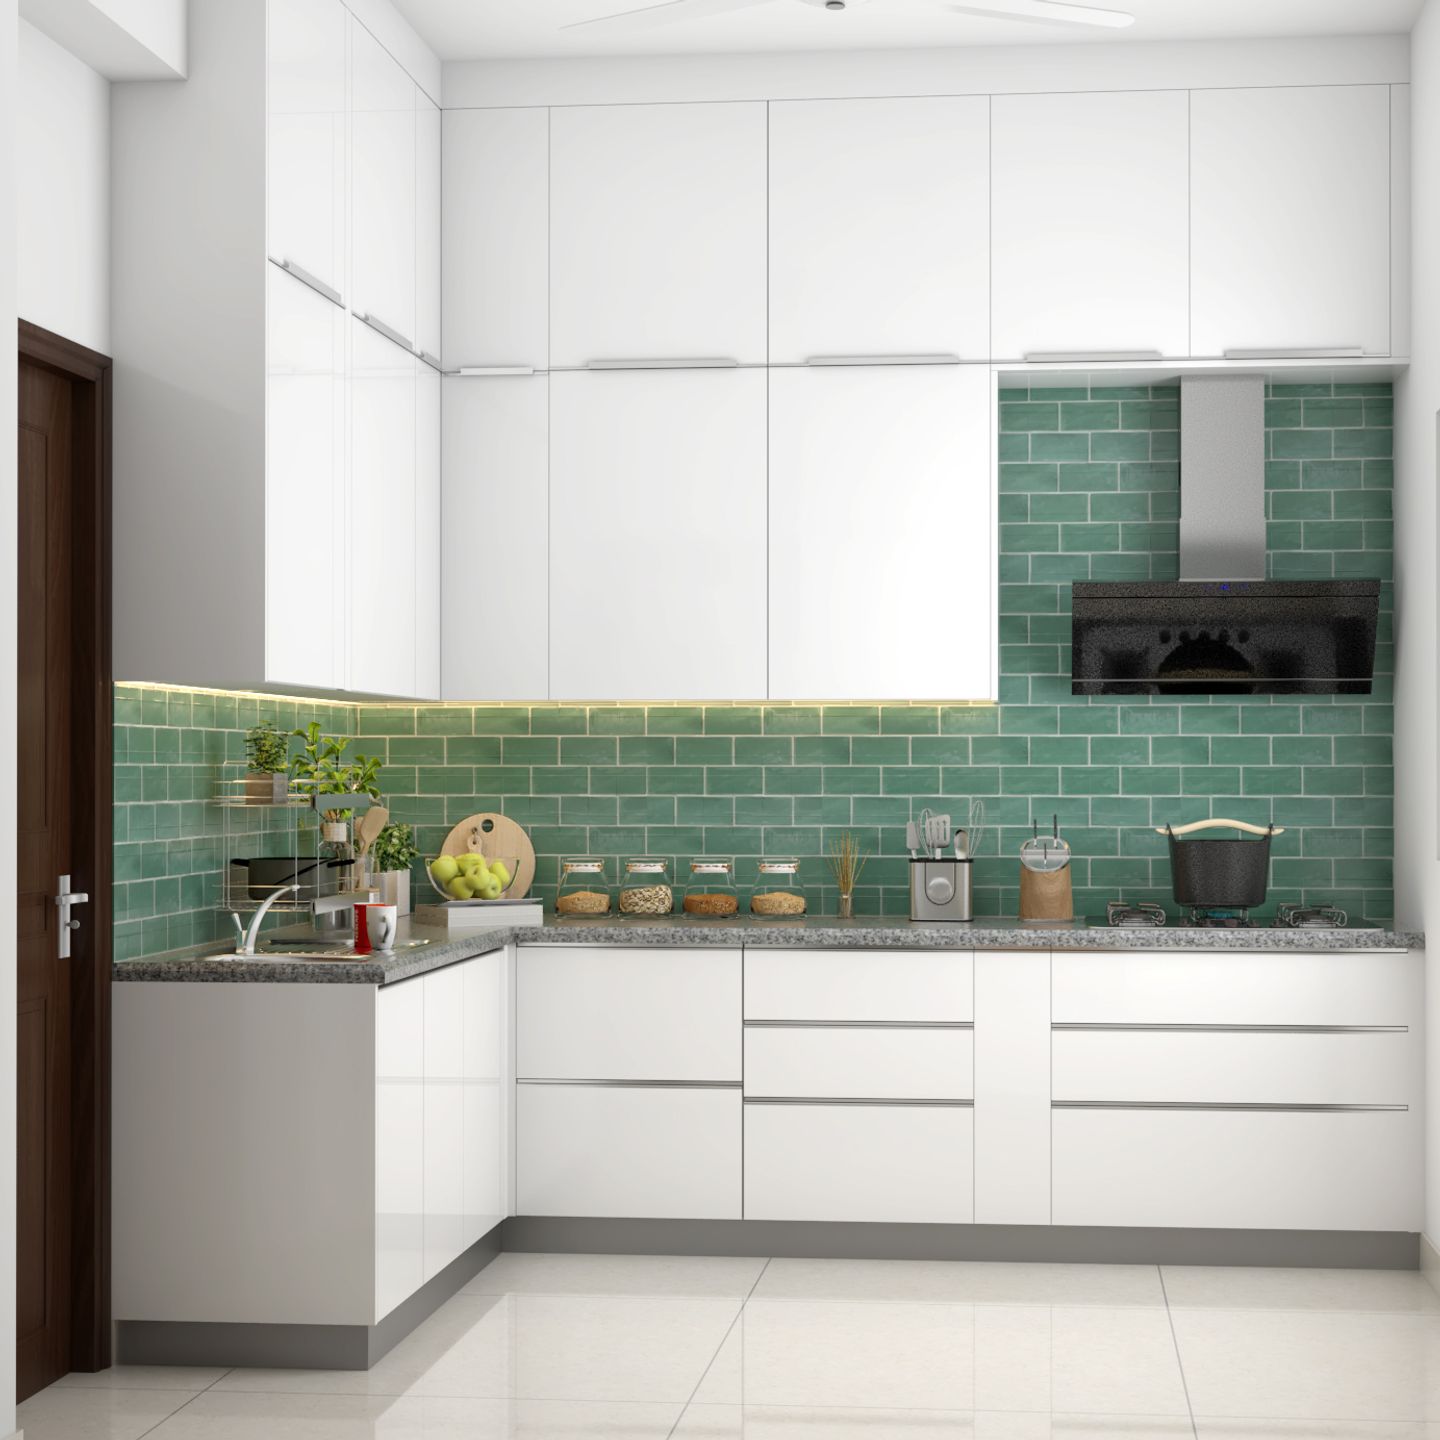 Aesthetic White Kitchen Design - Livspace